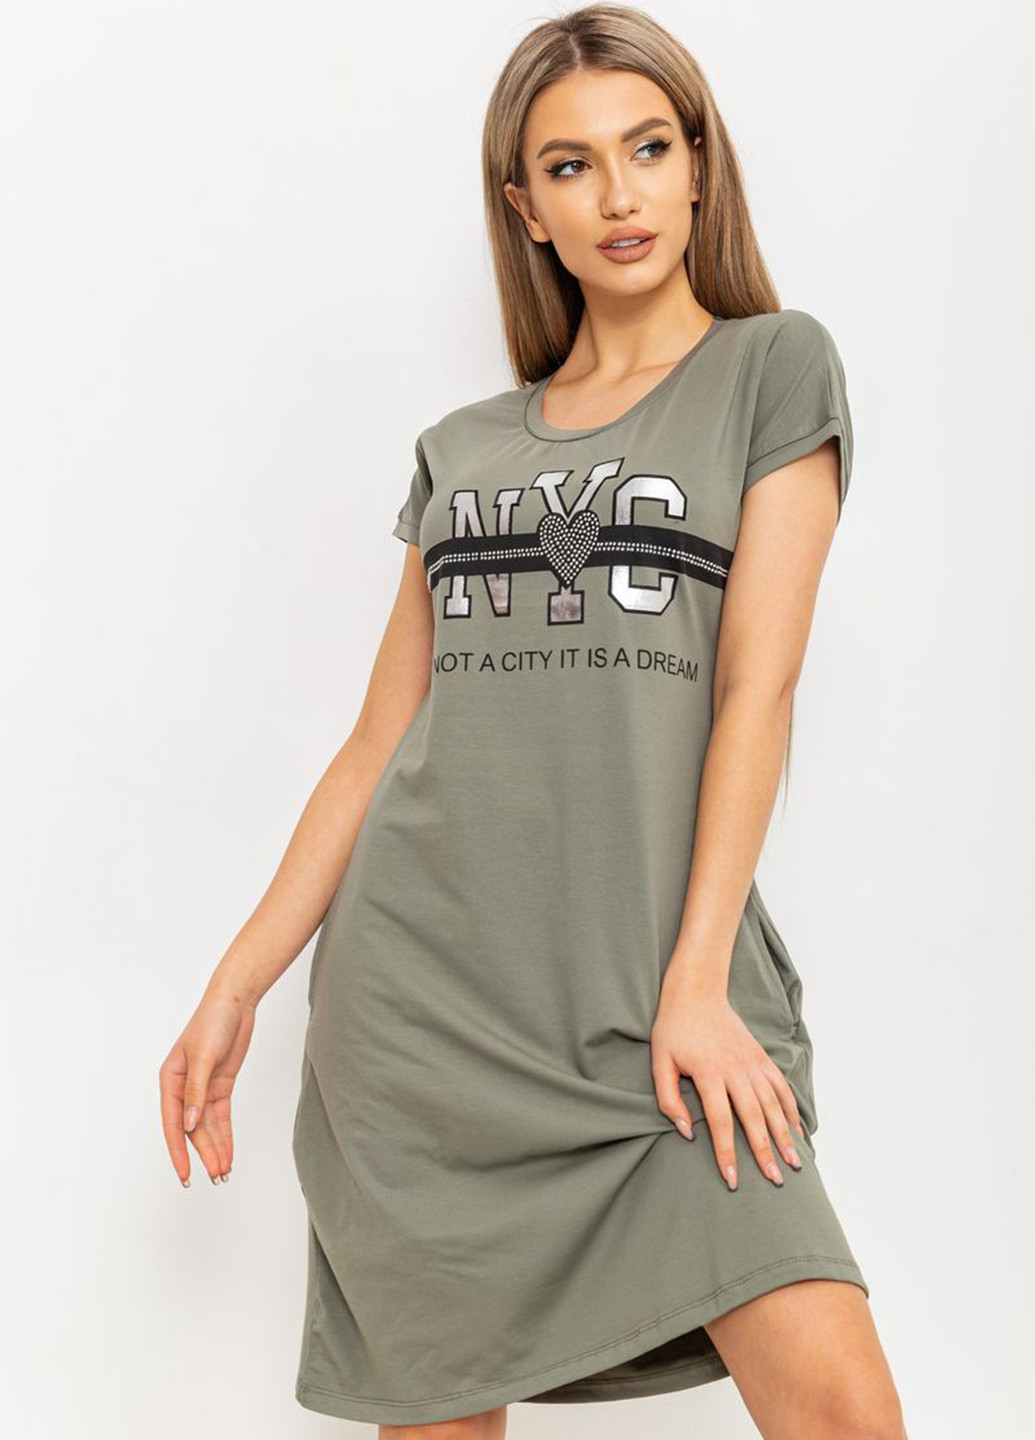 Оливковое домашнее платье платье-футболка Ager с надписью